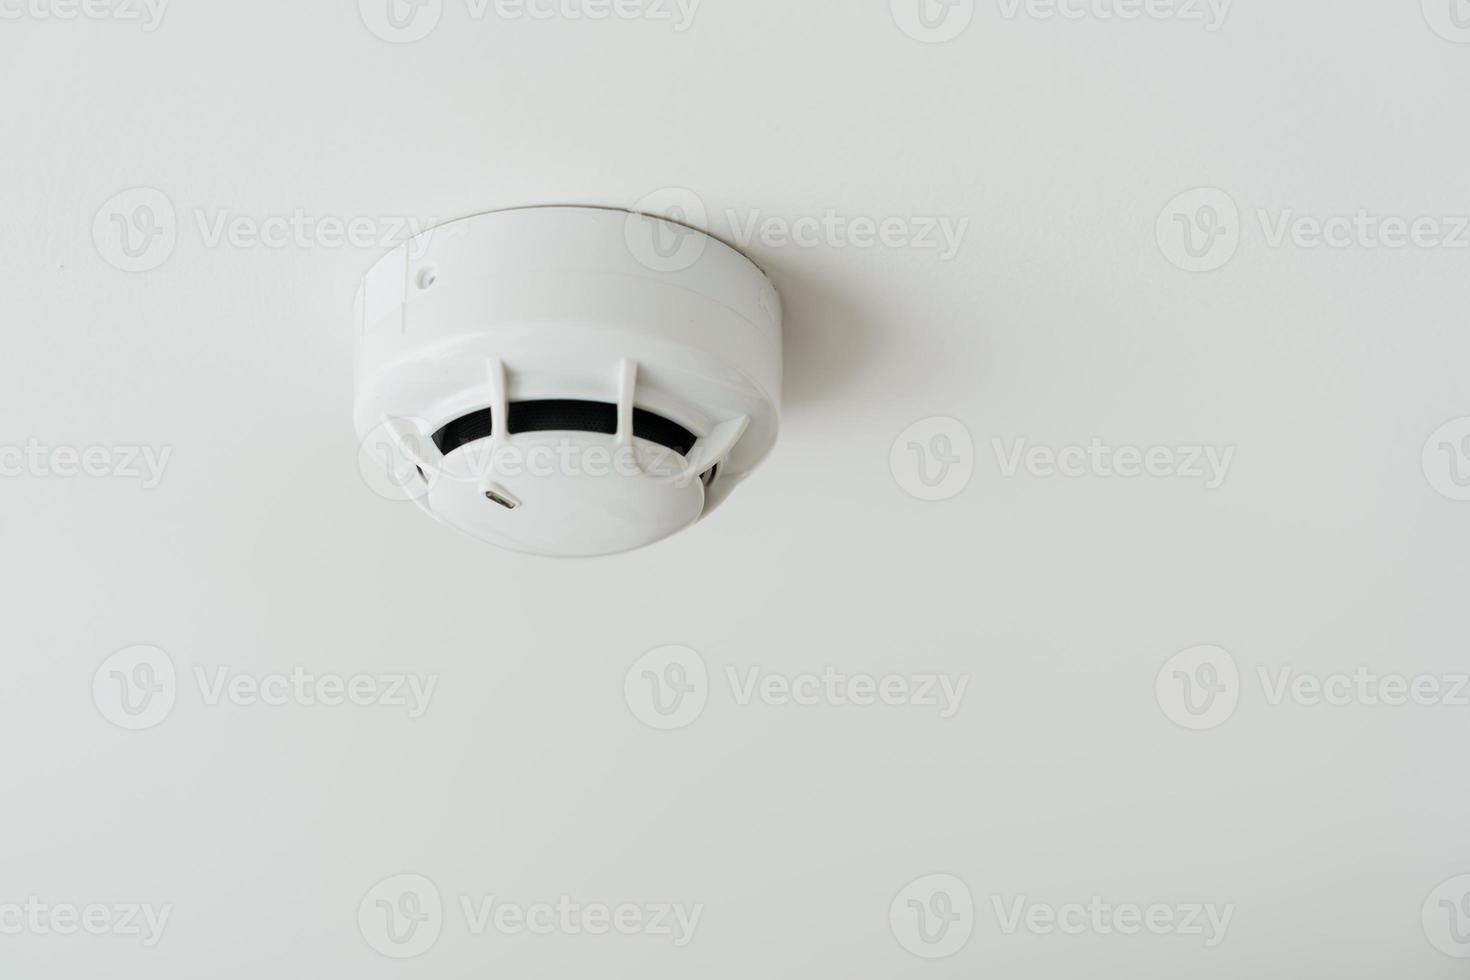 rök sensor detektor monterad på tak i Hem eller lägenhet. säkerhet och brand säkerhet begrepp foto